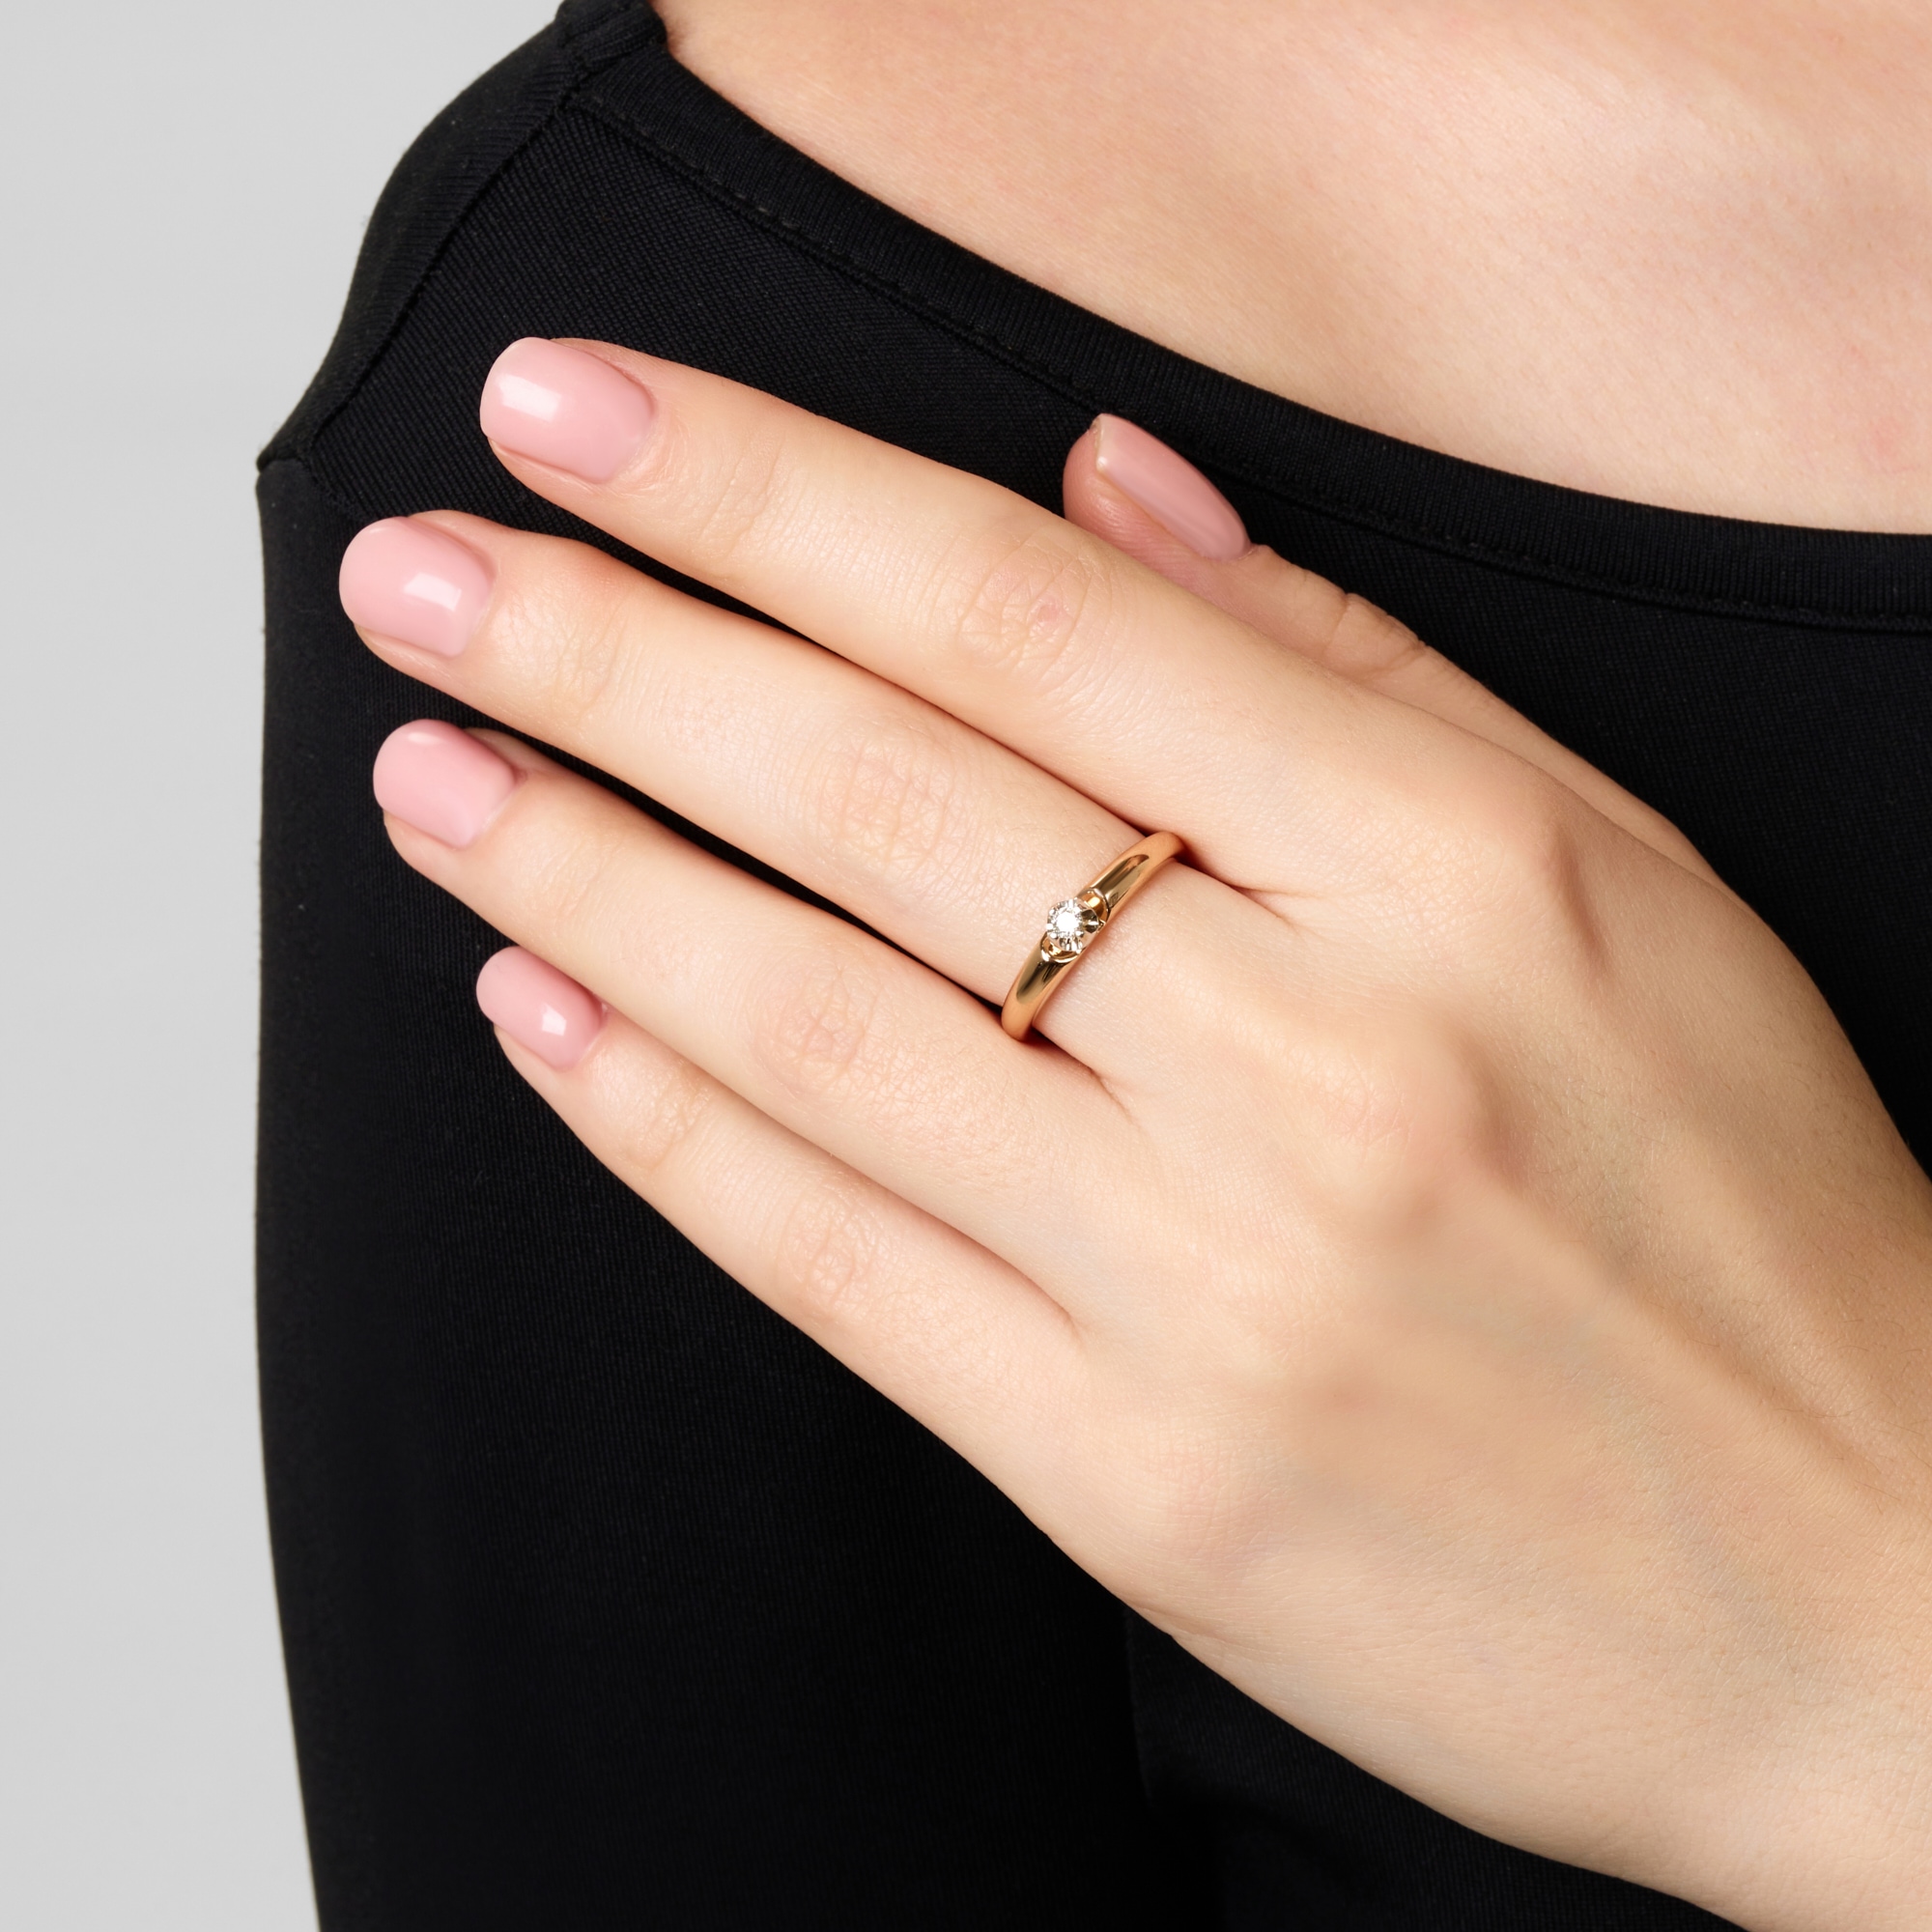 Золотое кольцо  из красного золота 585 пробы со вставками из драгоценных камней (бриллиант) ЮПК1314674, размеры от 16 до 18